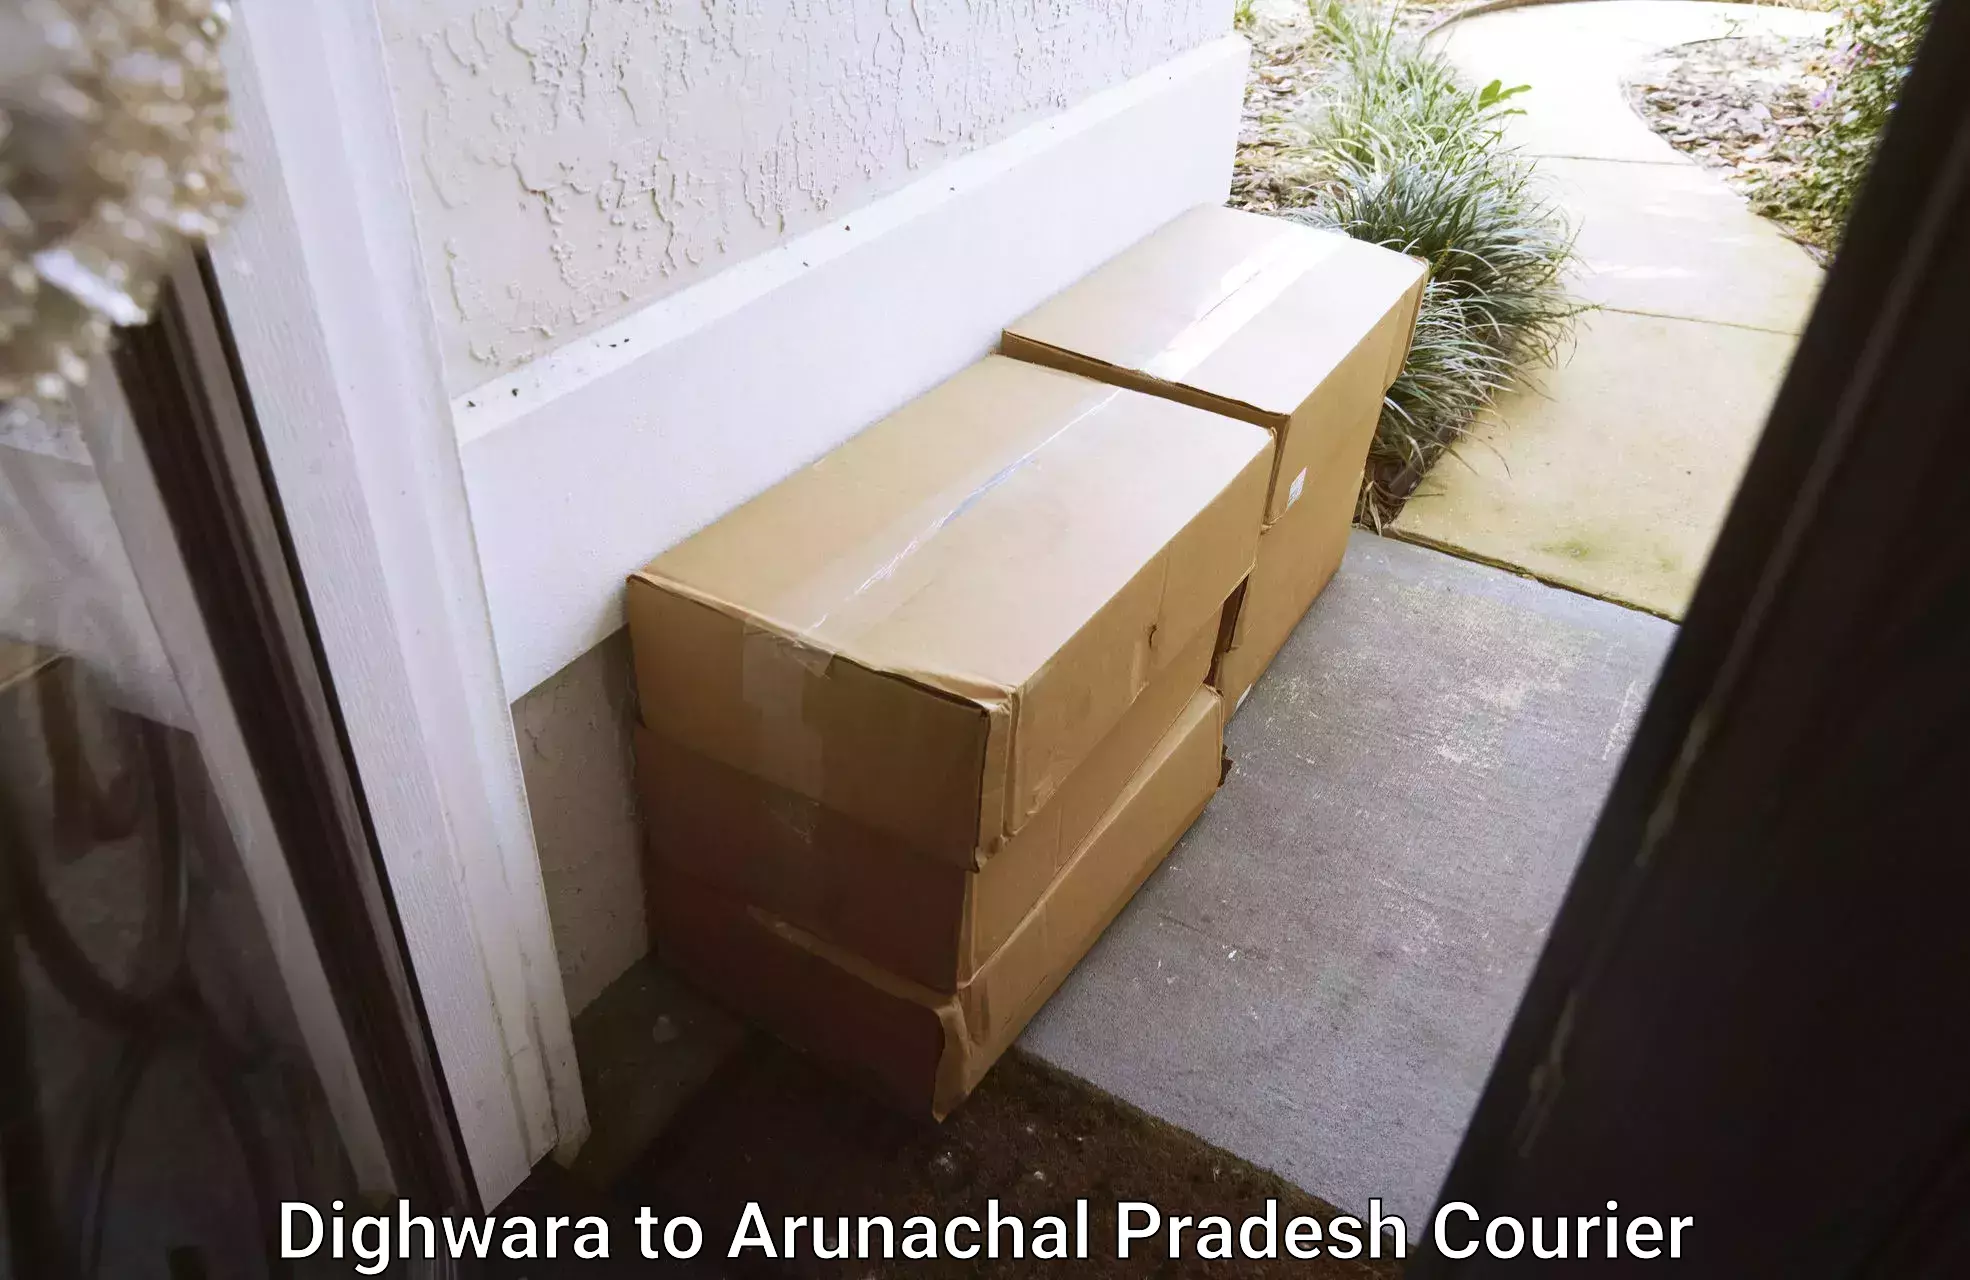 Professional packing services Dighwara to Arunachal Pradesh